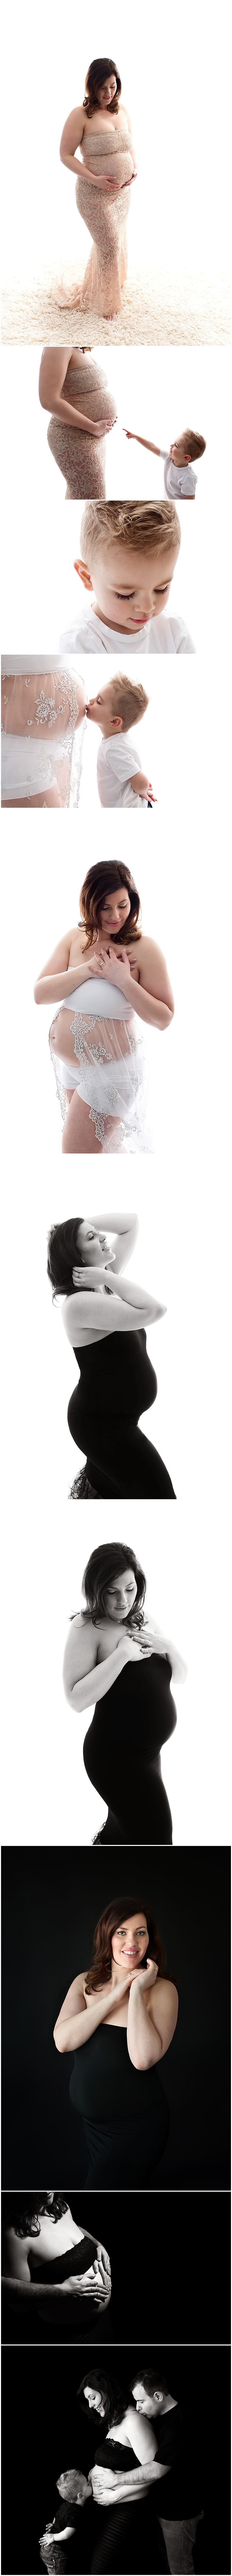 Milou 35 weken - Zwanger fotosessie Wijchen